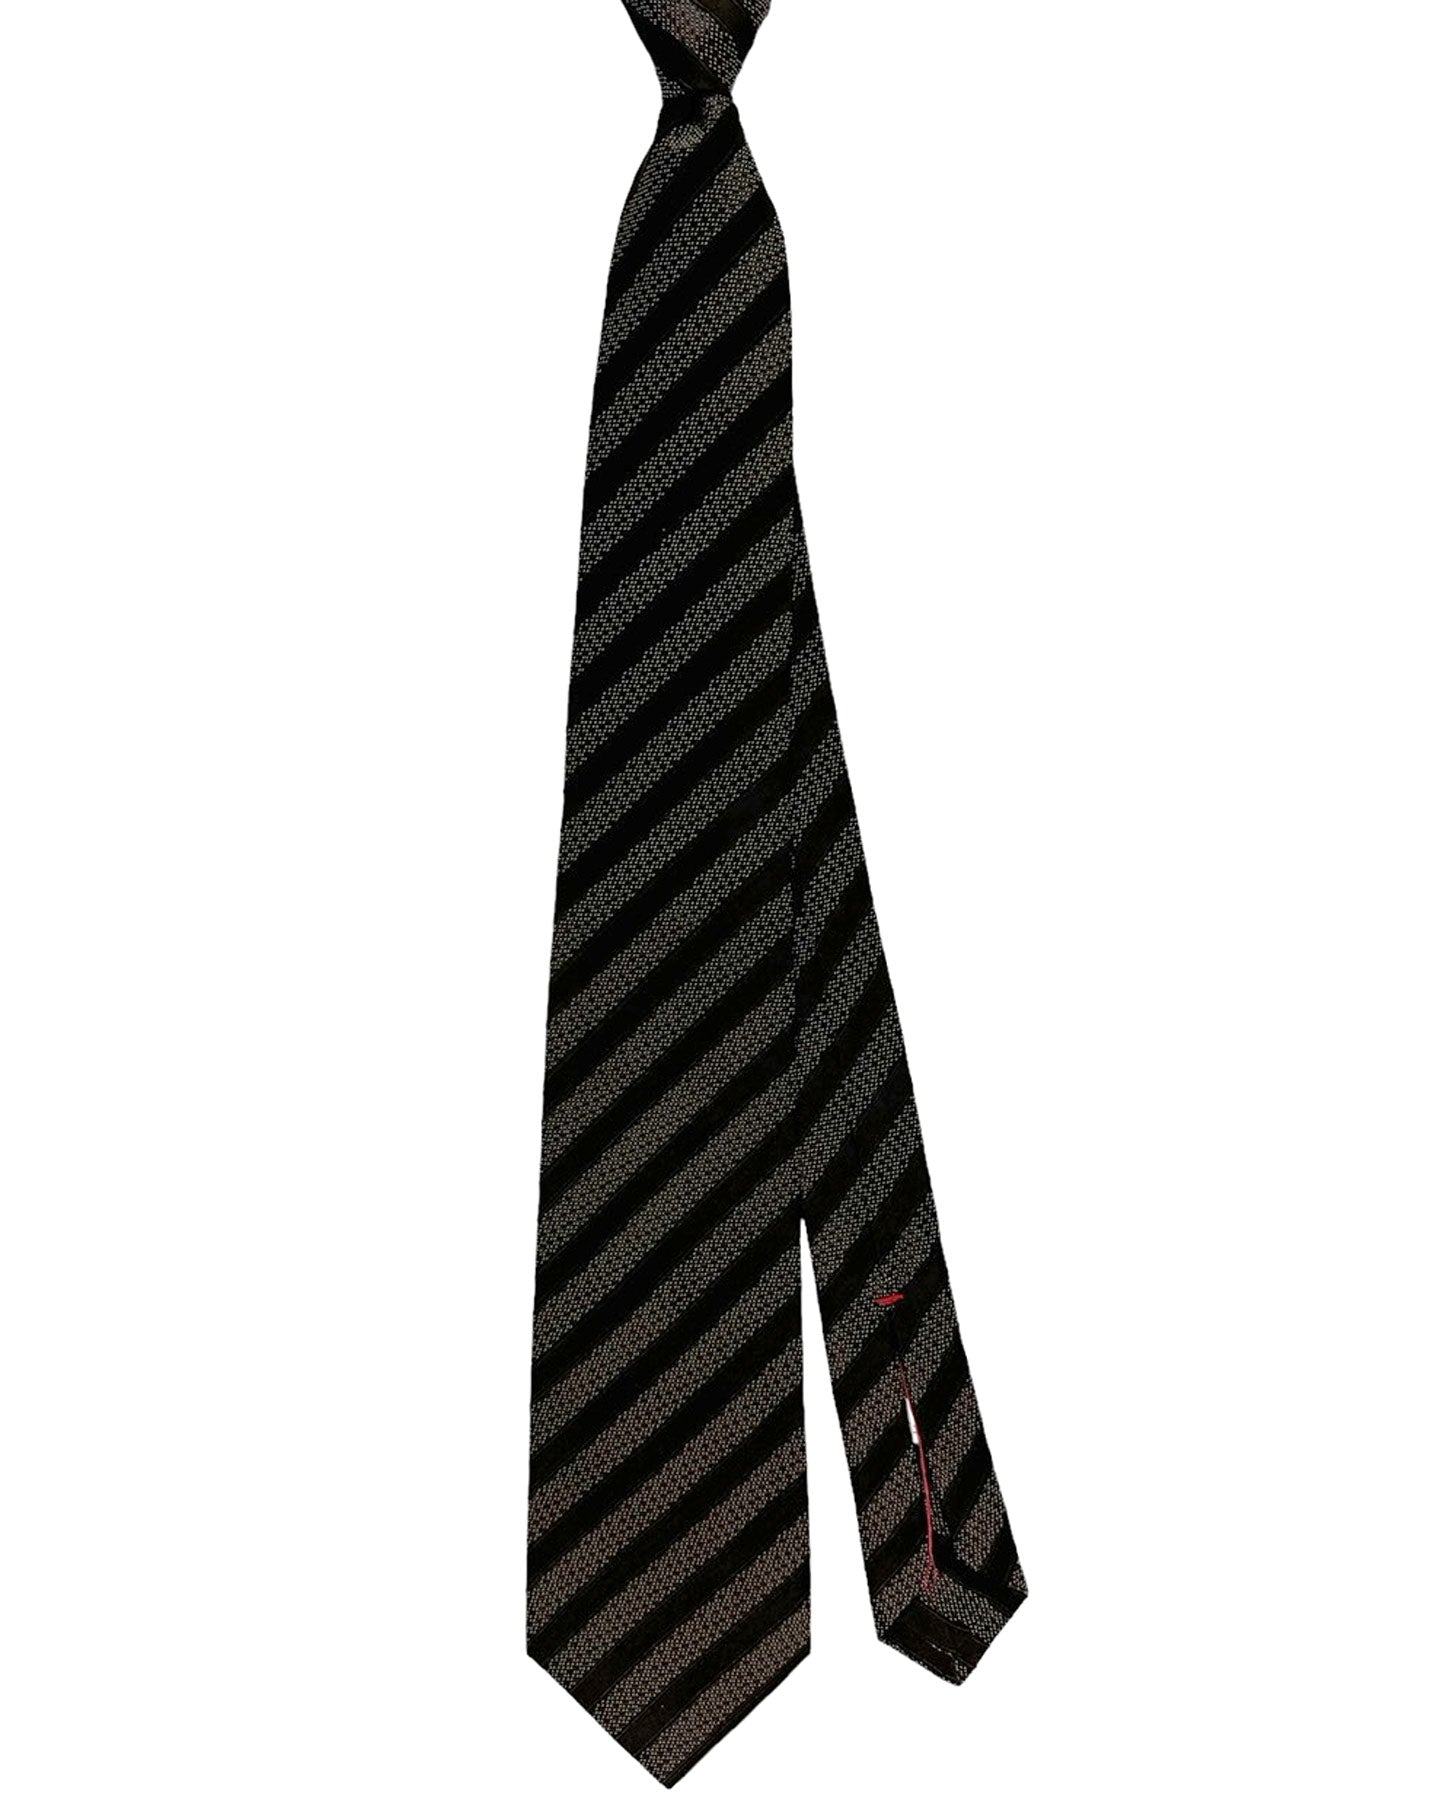 Isaia Tie Black Stripes Design - Sevenfold Silk Necktie